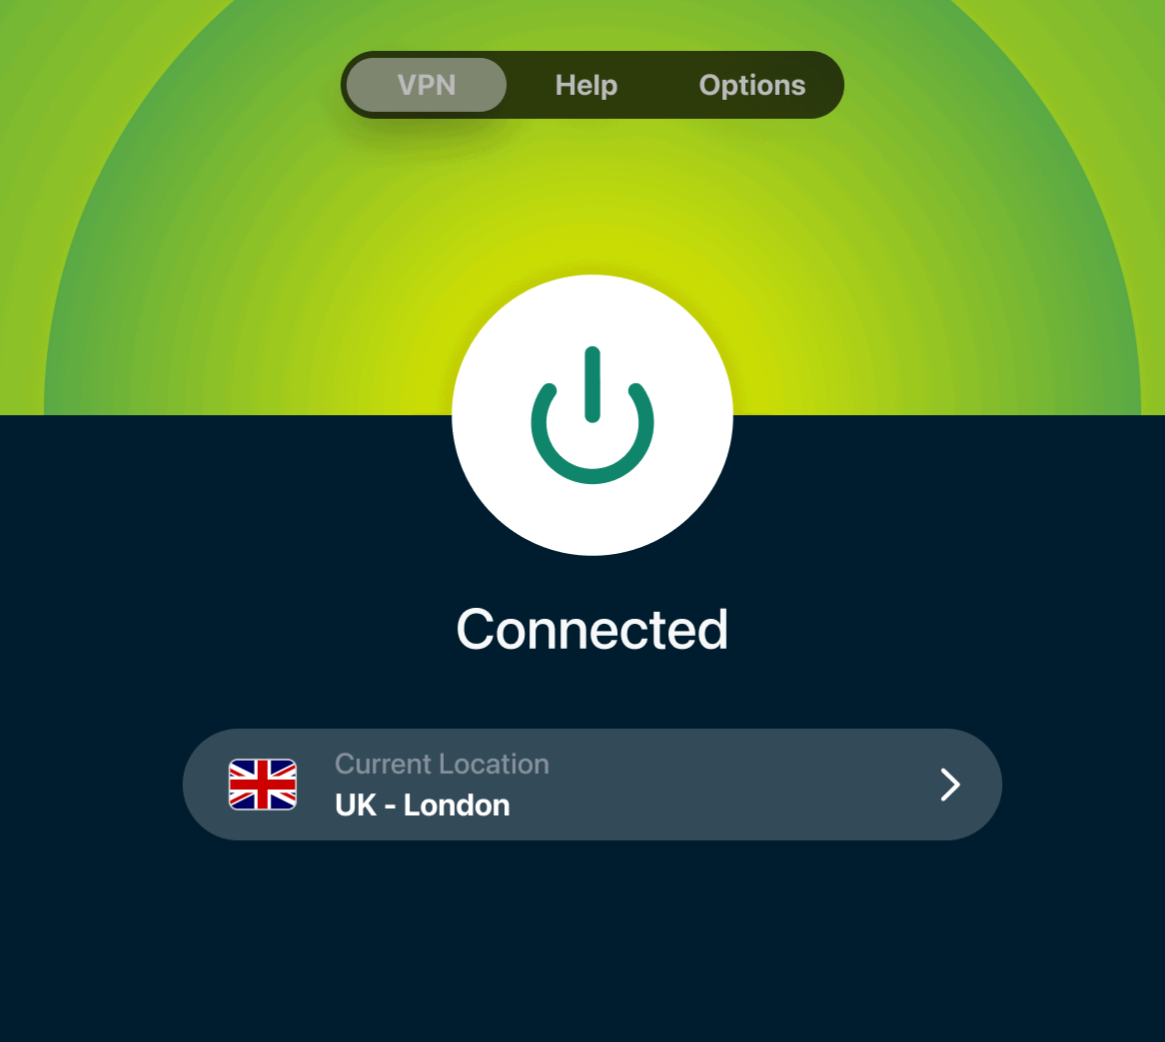 Interfejs użytkownika aplikacji VPN z przyciskiem włącz/wyłącz, status połączenia "Connected" i wybraną lokalizacją "UK - London".